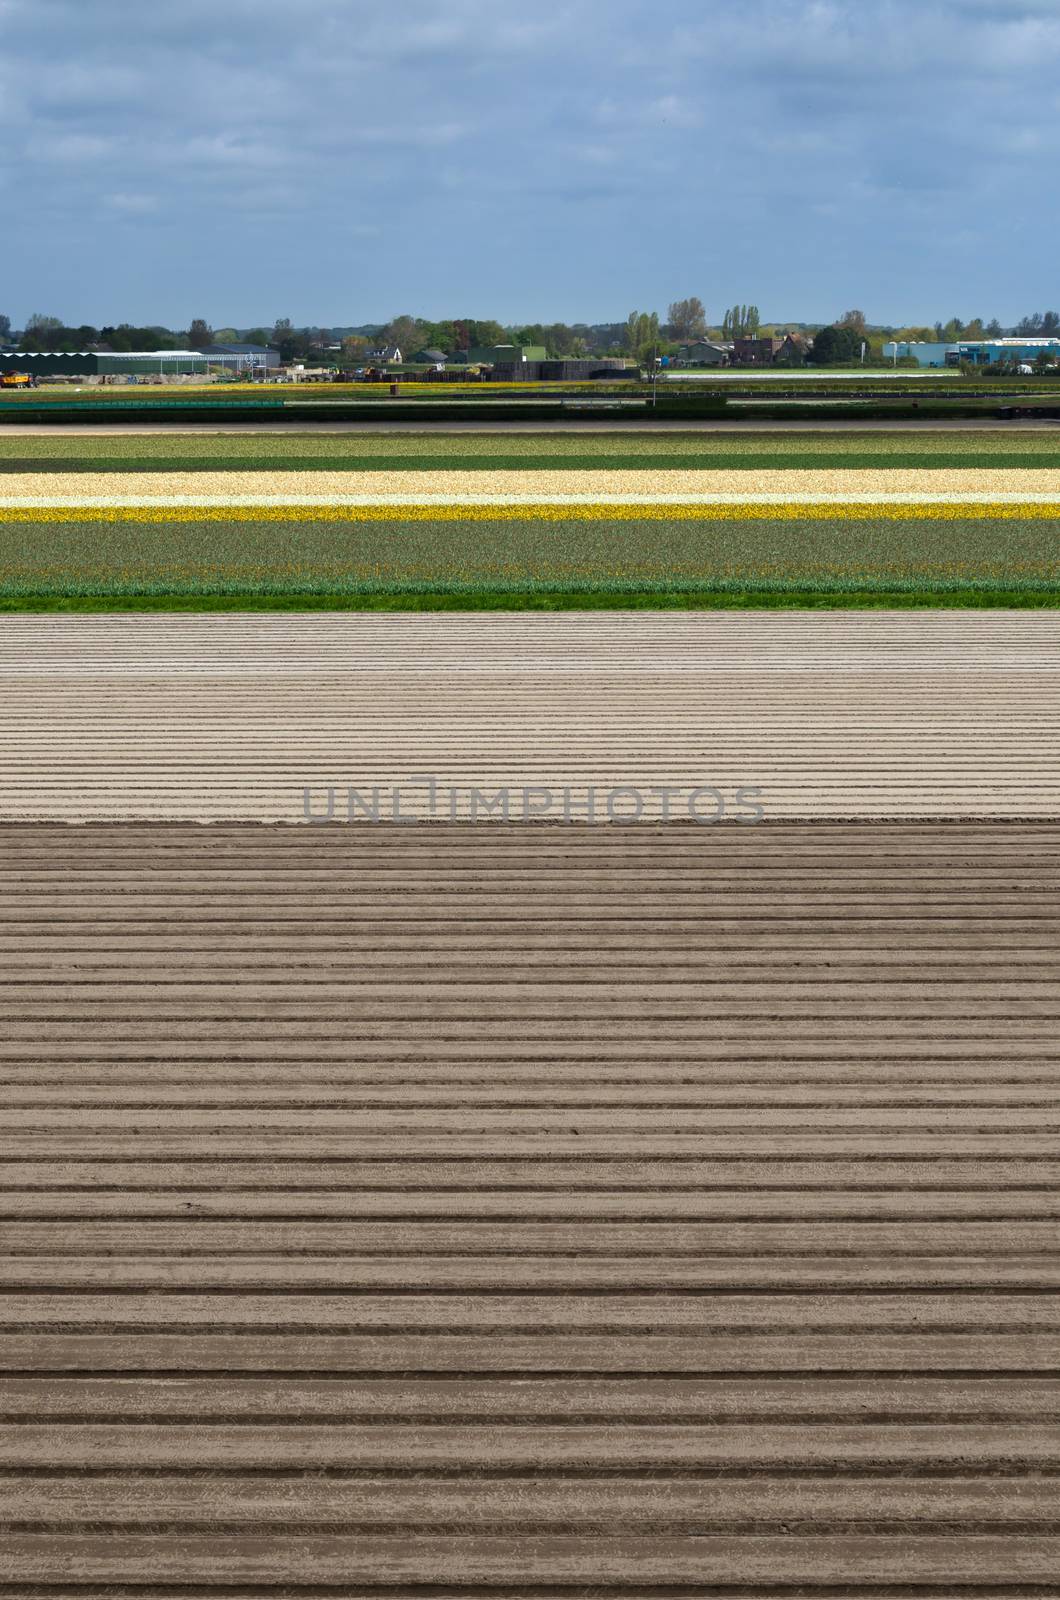 Dutch flowerbed after harvest in Lisse, Netherlands